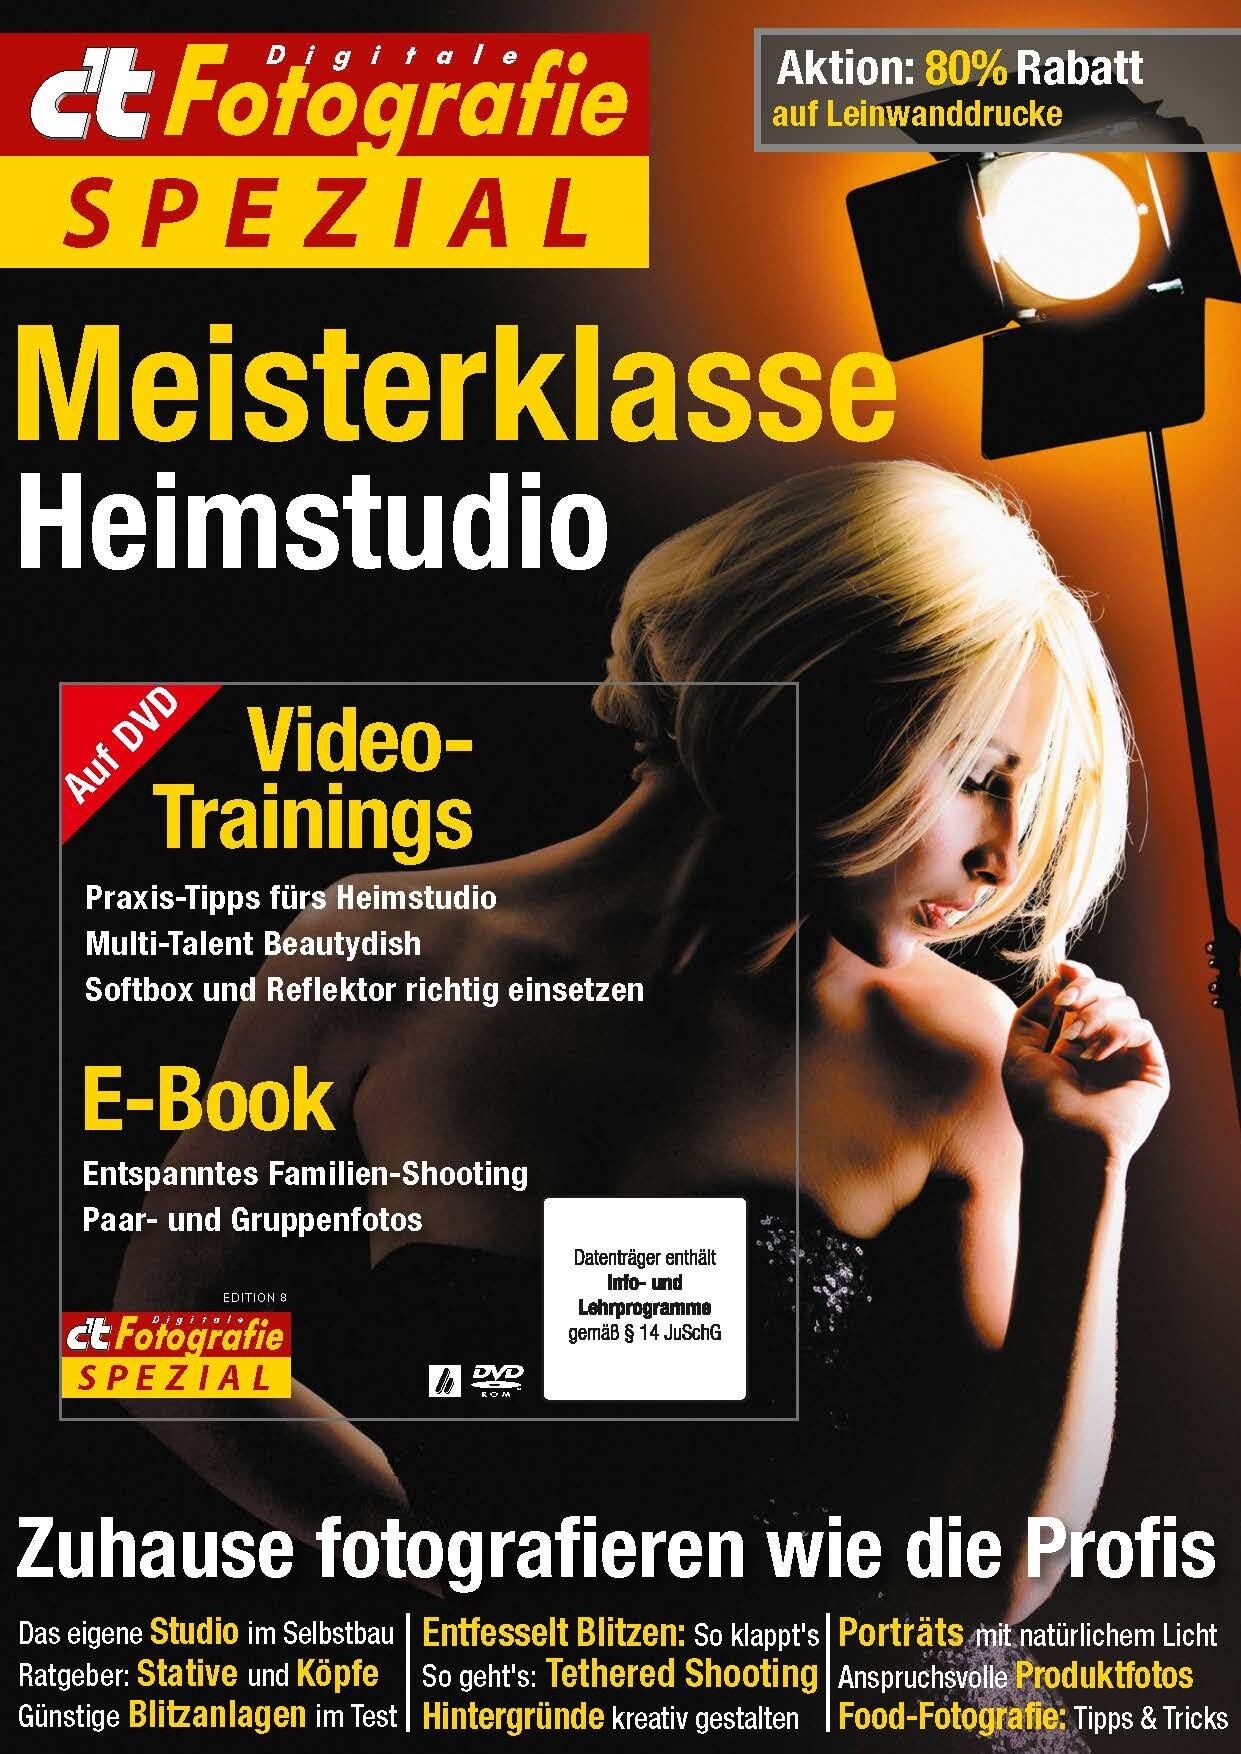 c't Fotografie Spezial: Meisterklasse Heimstudio